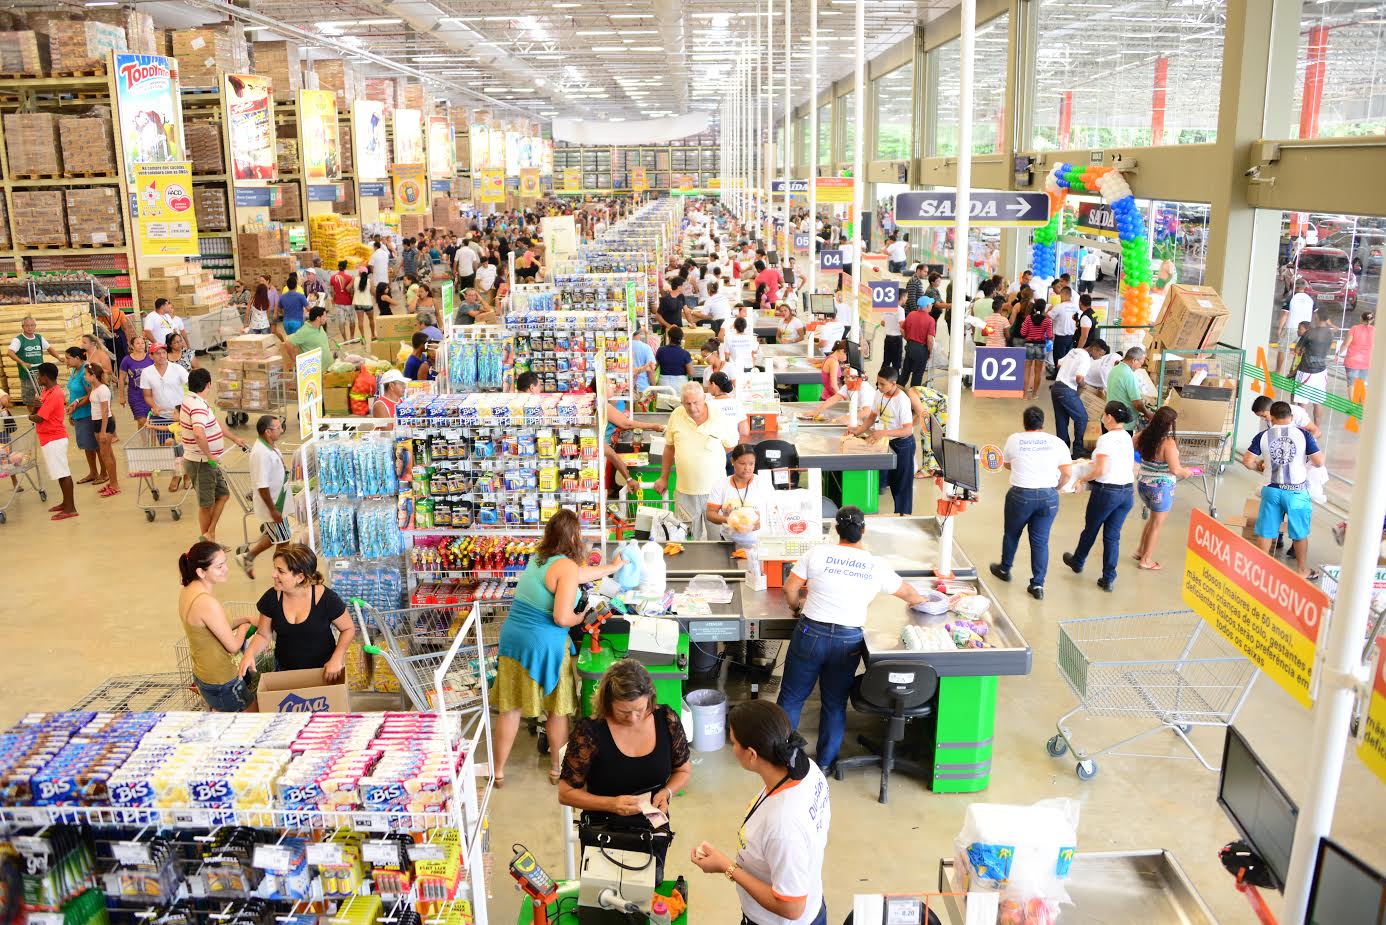 Atacadão. do Carrefour (CRFB3), é condenada a pagar multa milionária por vender produtos vencidos